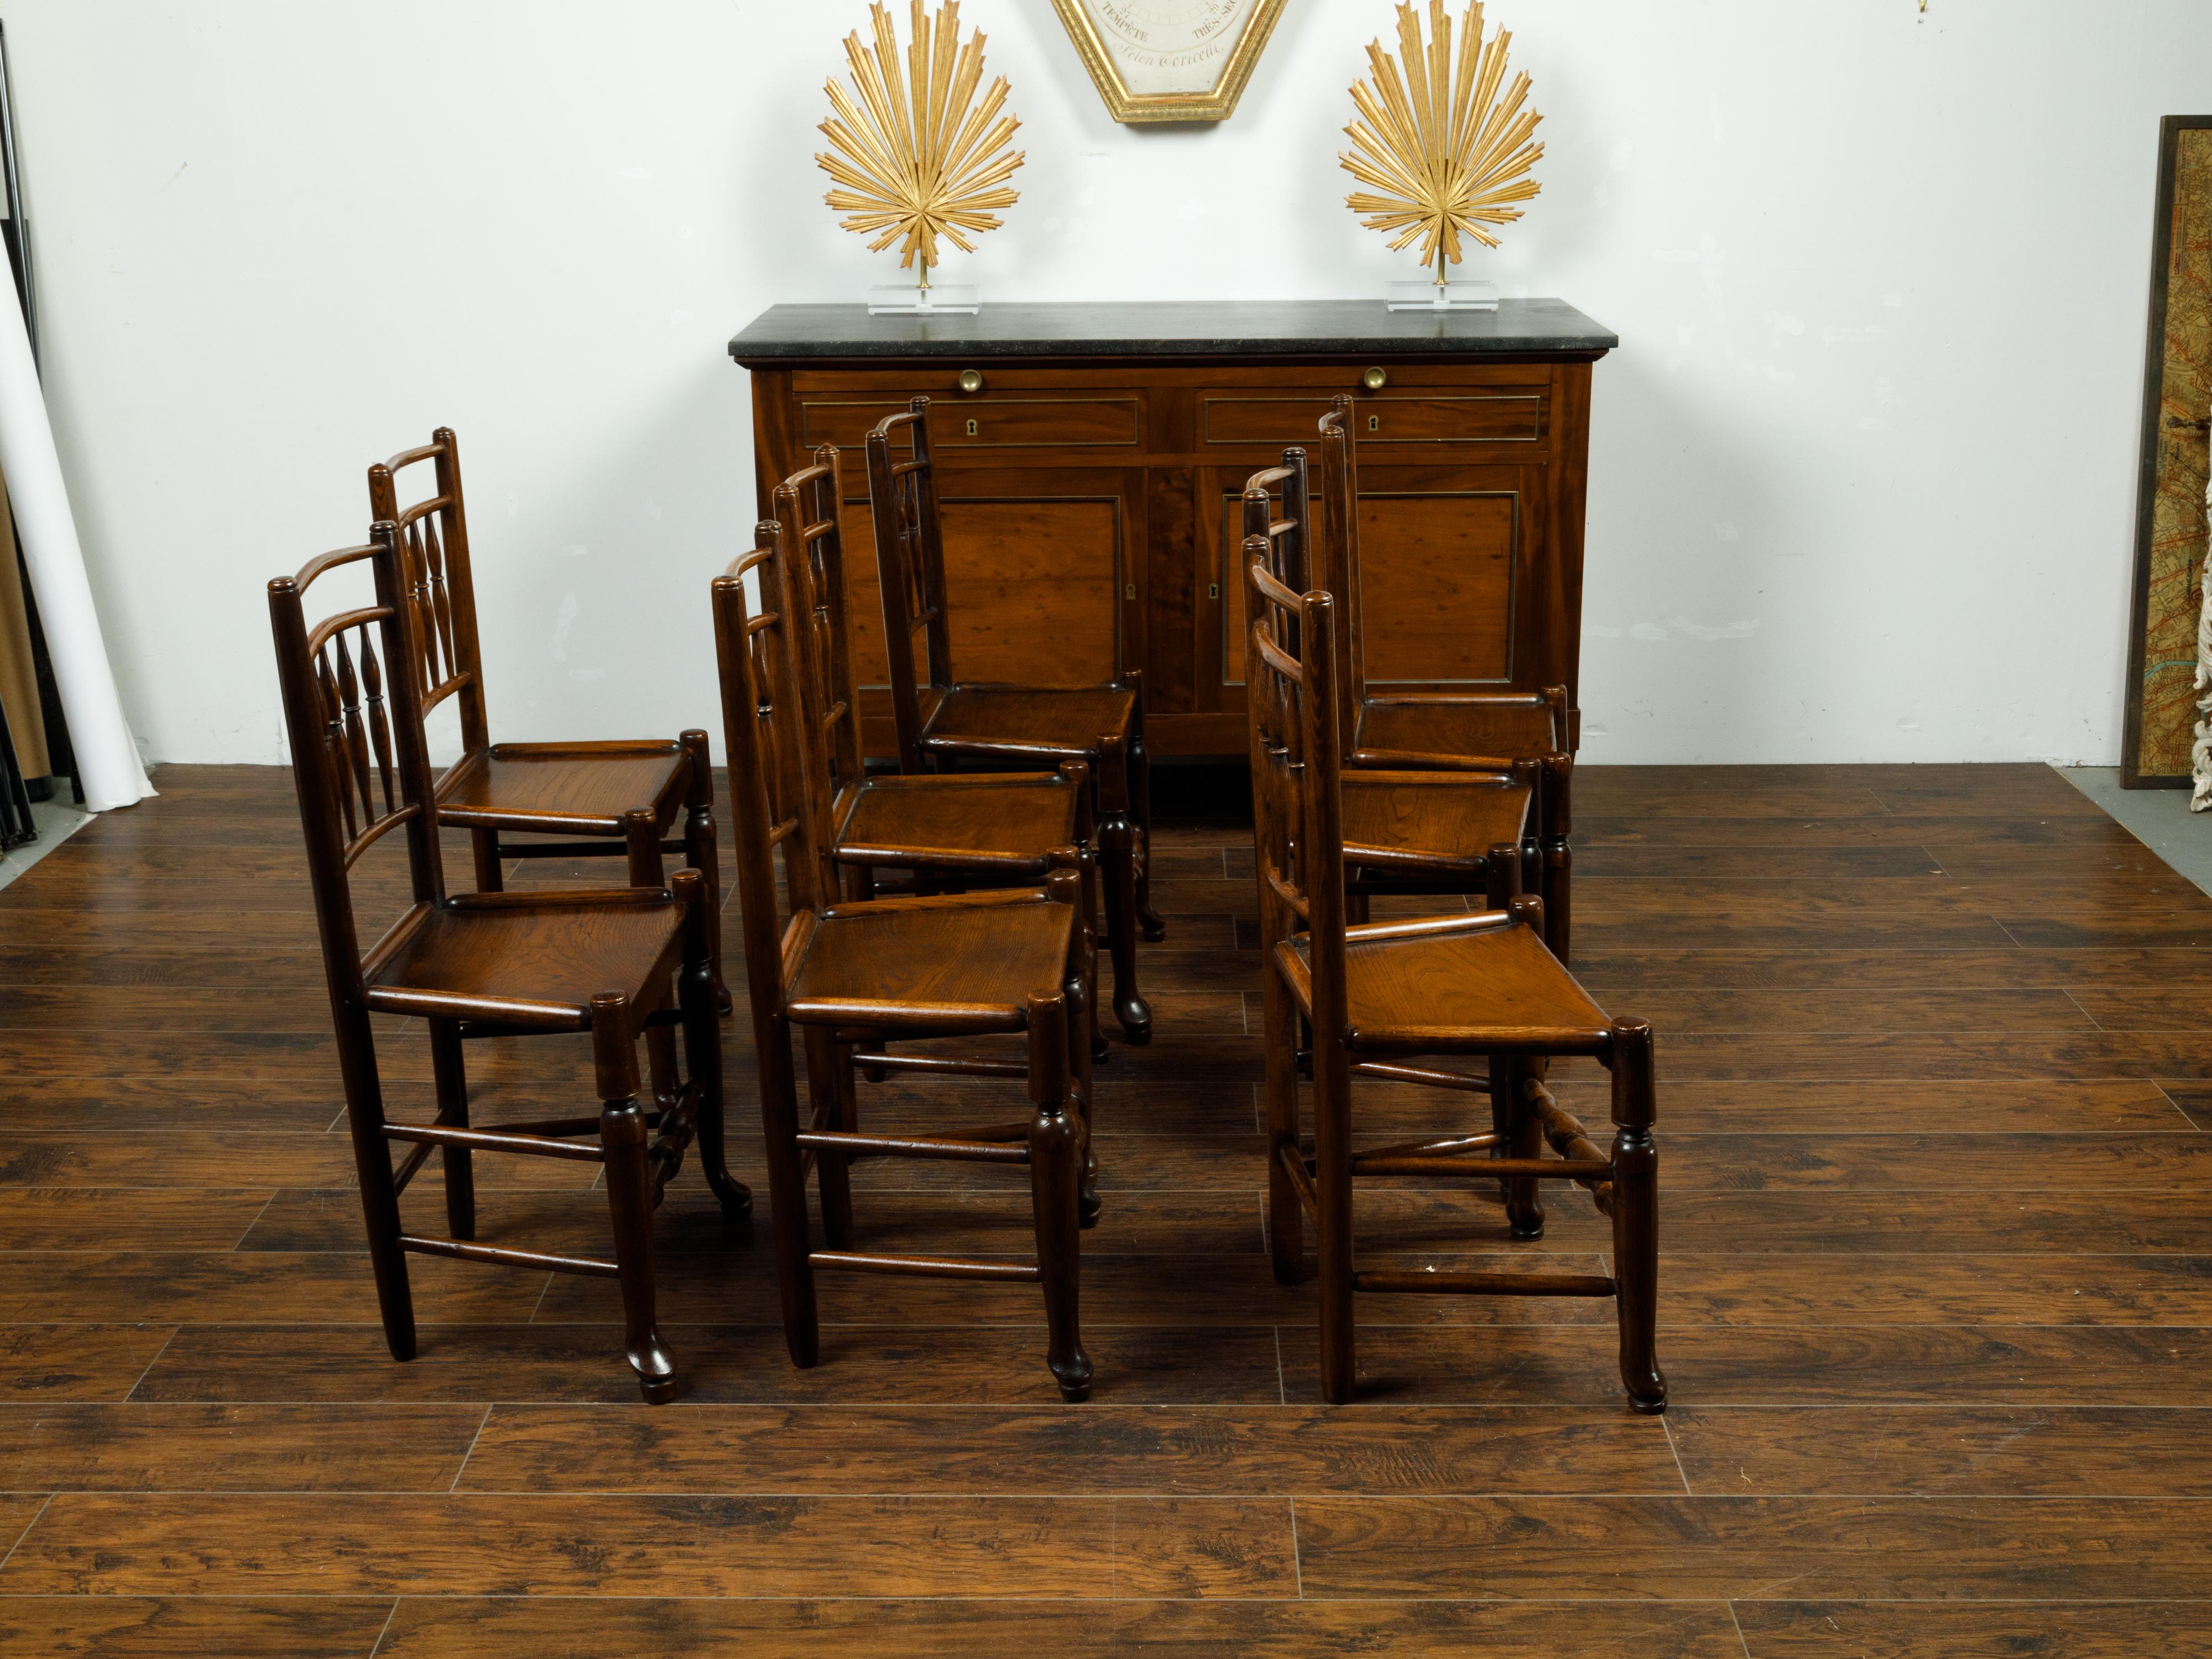 Ensemble anglais de huit chaises de salle à manger en chêne de la fin du XIXe siècle, avec des motifs de fuseaux et des sièges en bois. Créées en Angleterre au cours du dernier quart du XIXe siècle, chacune de cet ensemble de huit chaises de salle à